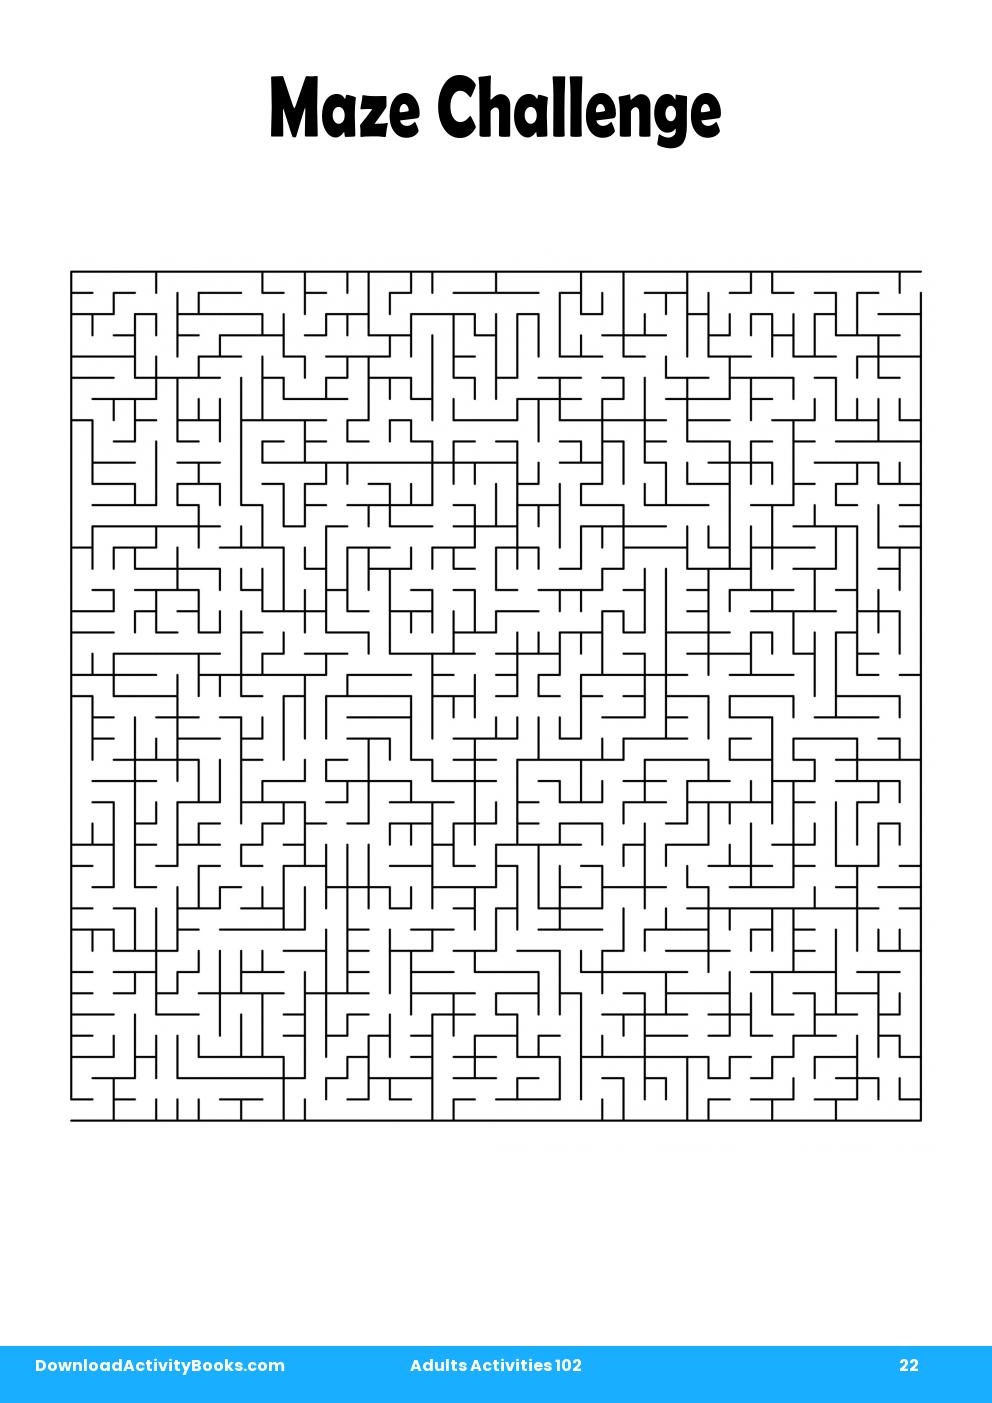 Maze Challenge in Adults Activities 102